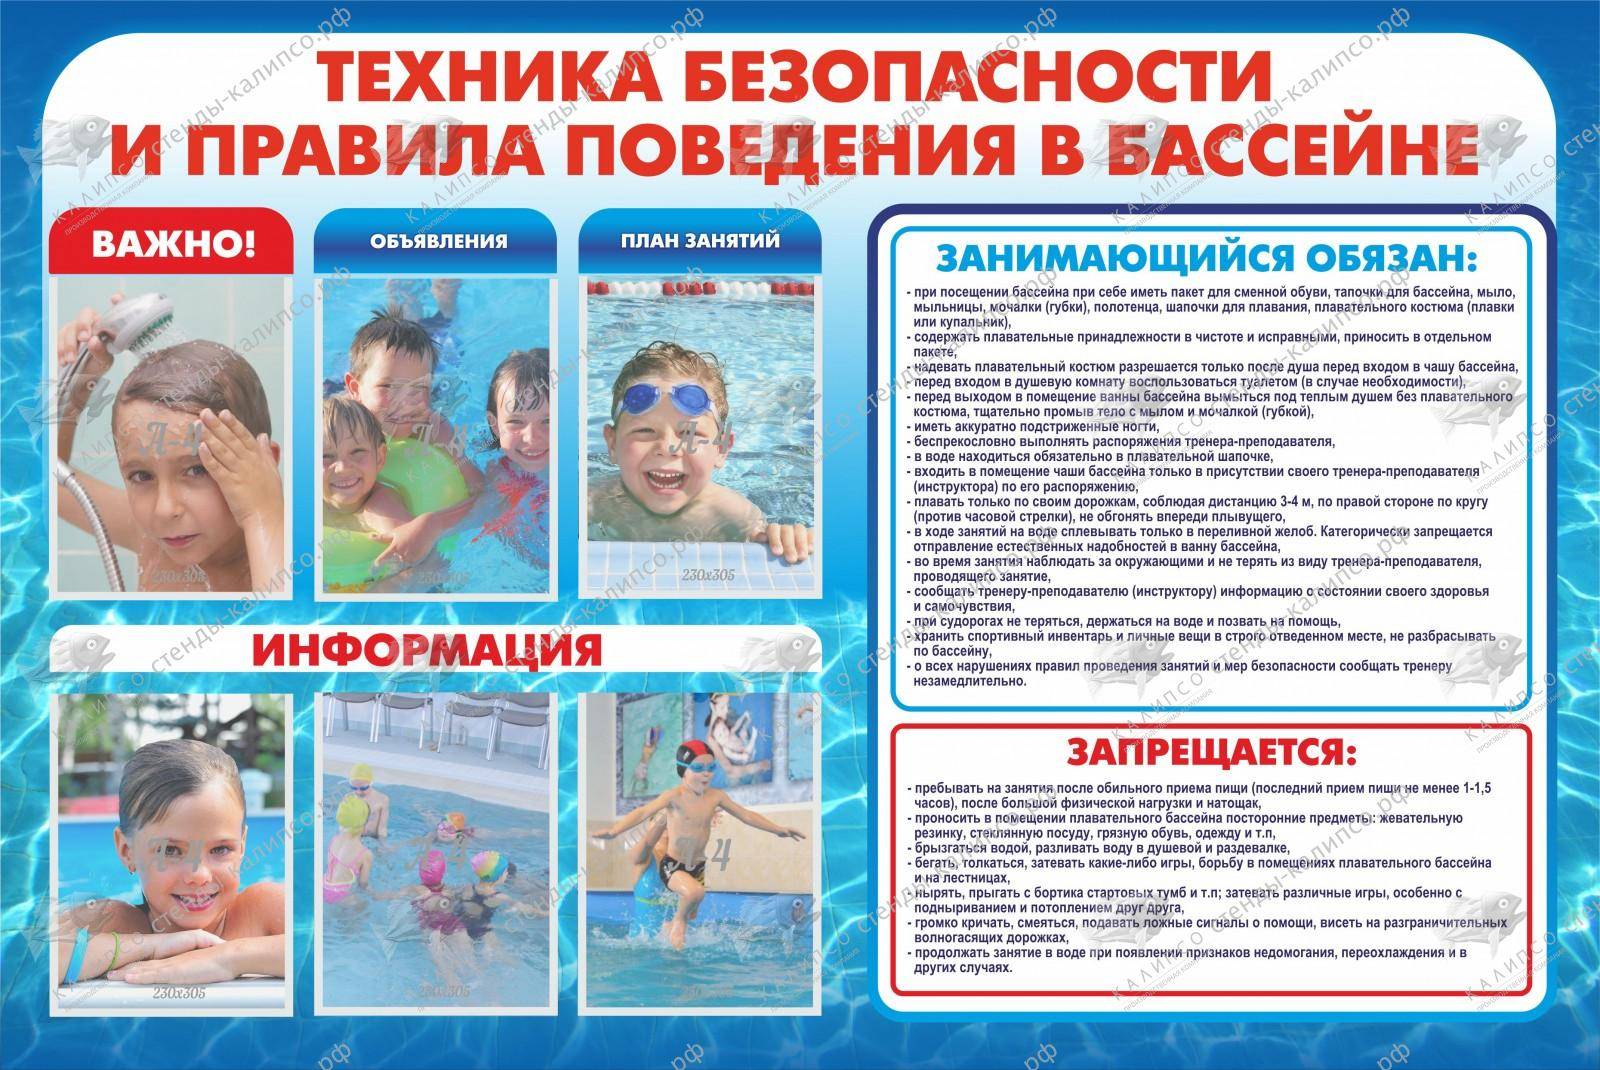 Правила безопасности в бассейне – вы должны это знать